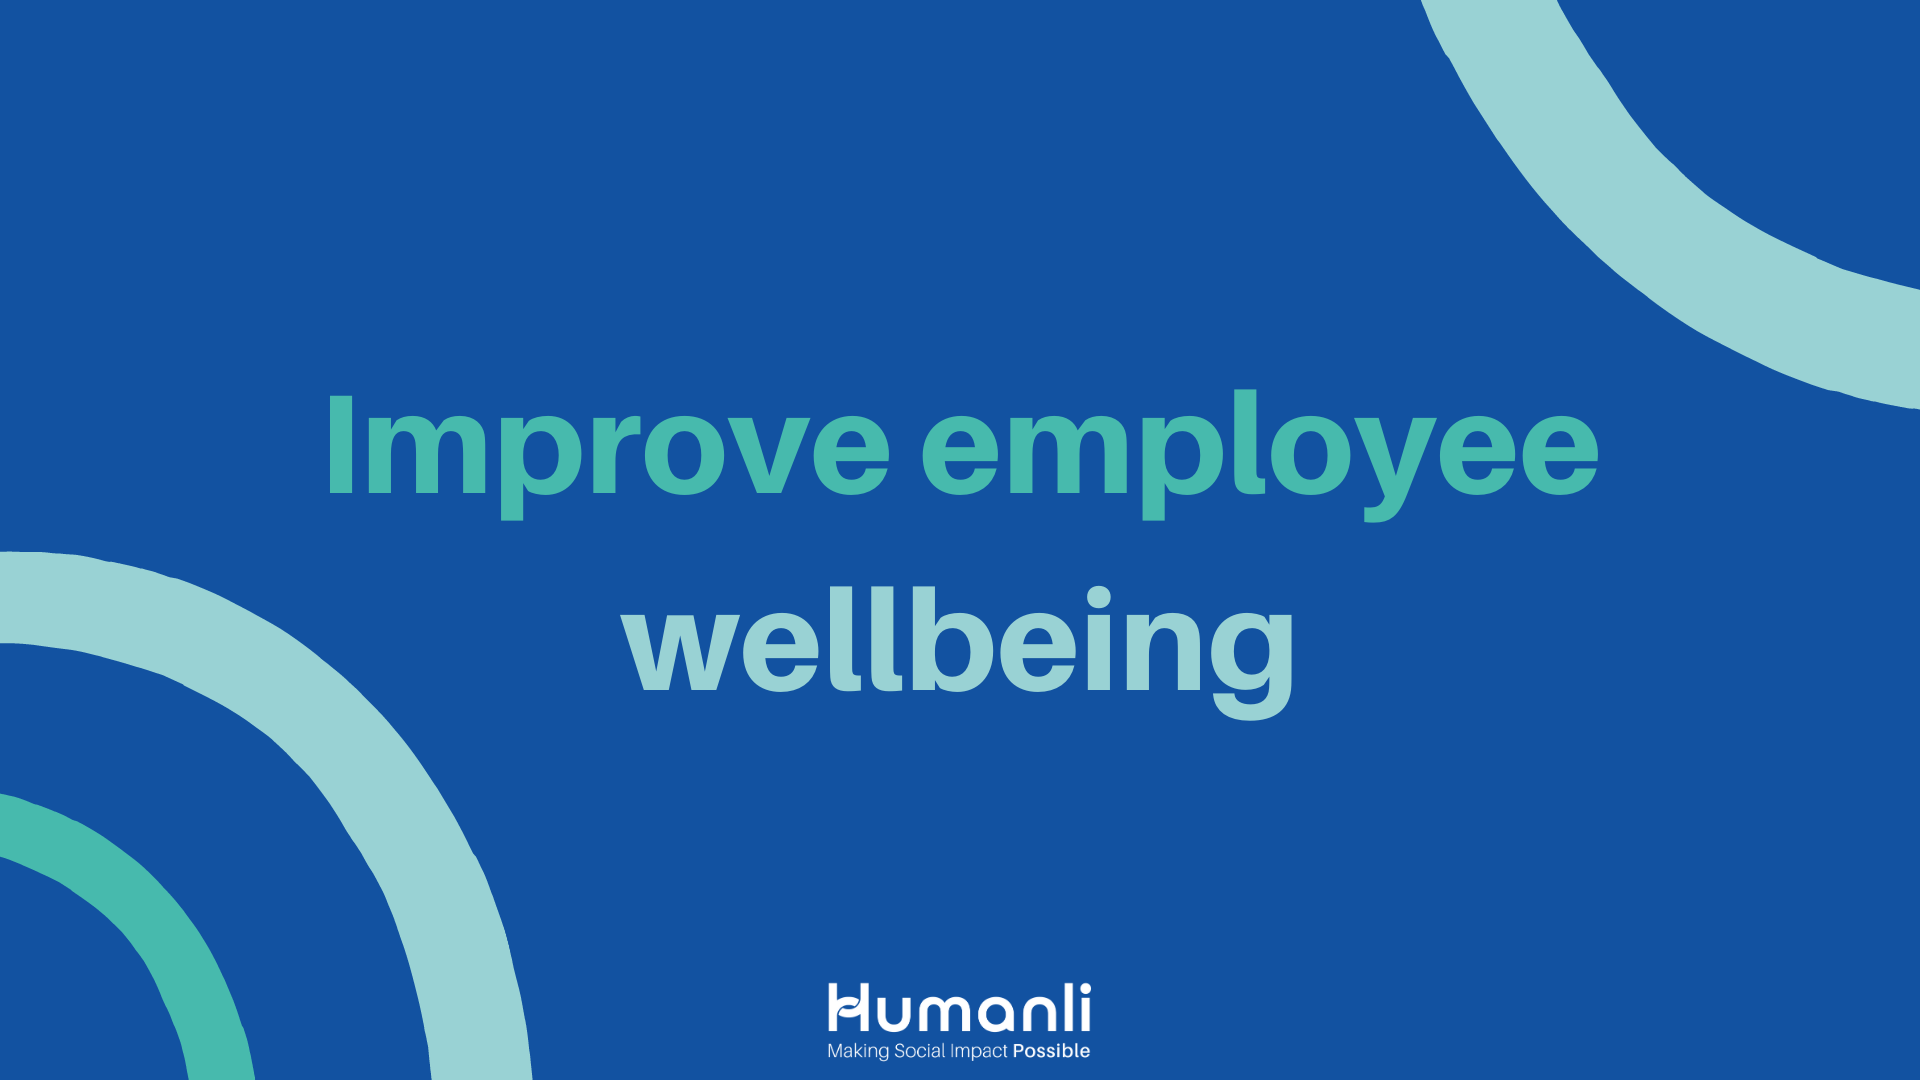 Improve employee wellbeing